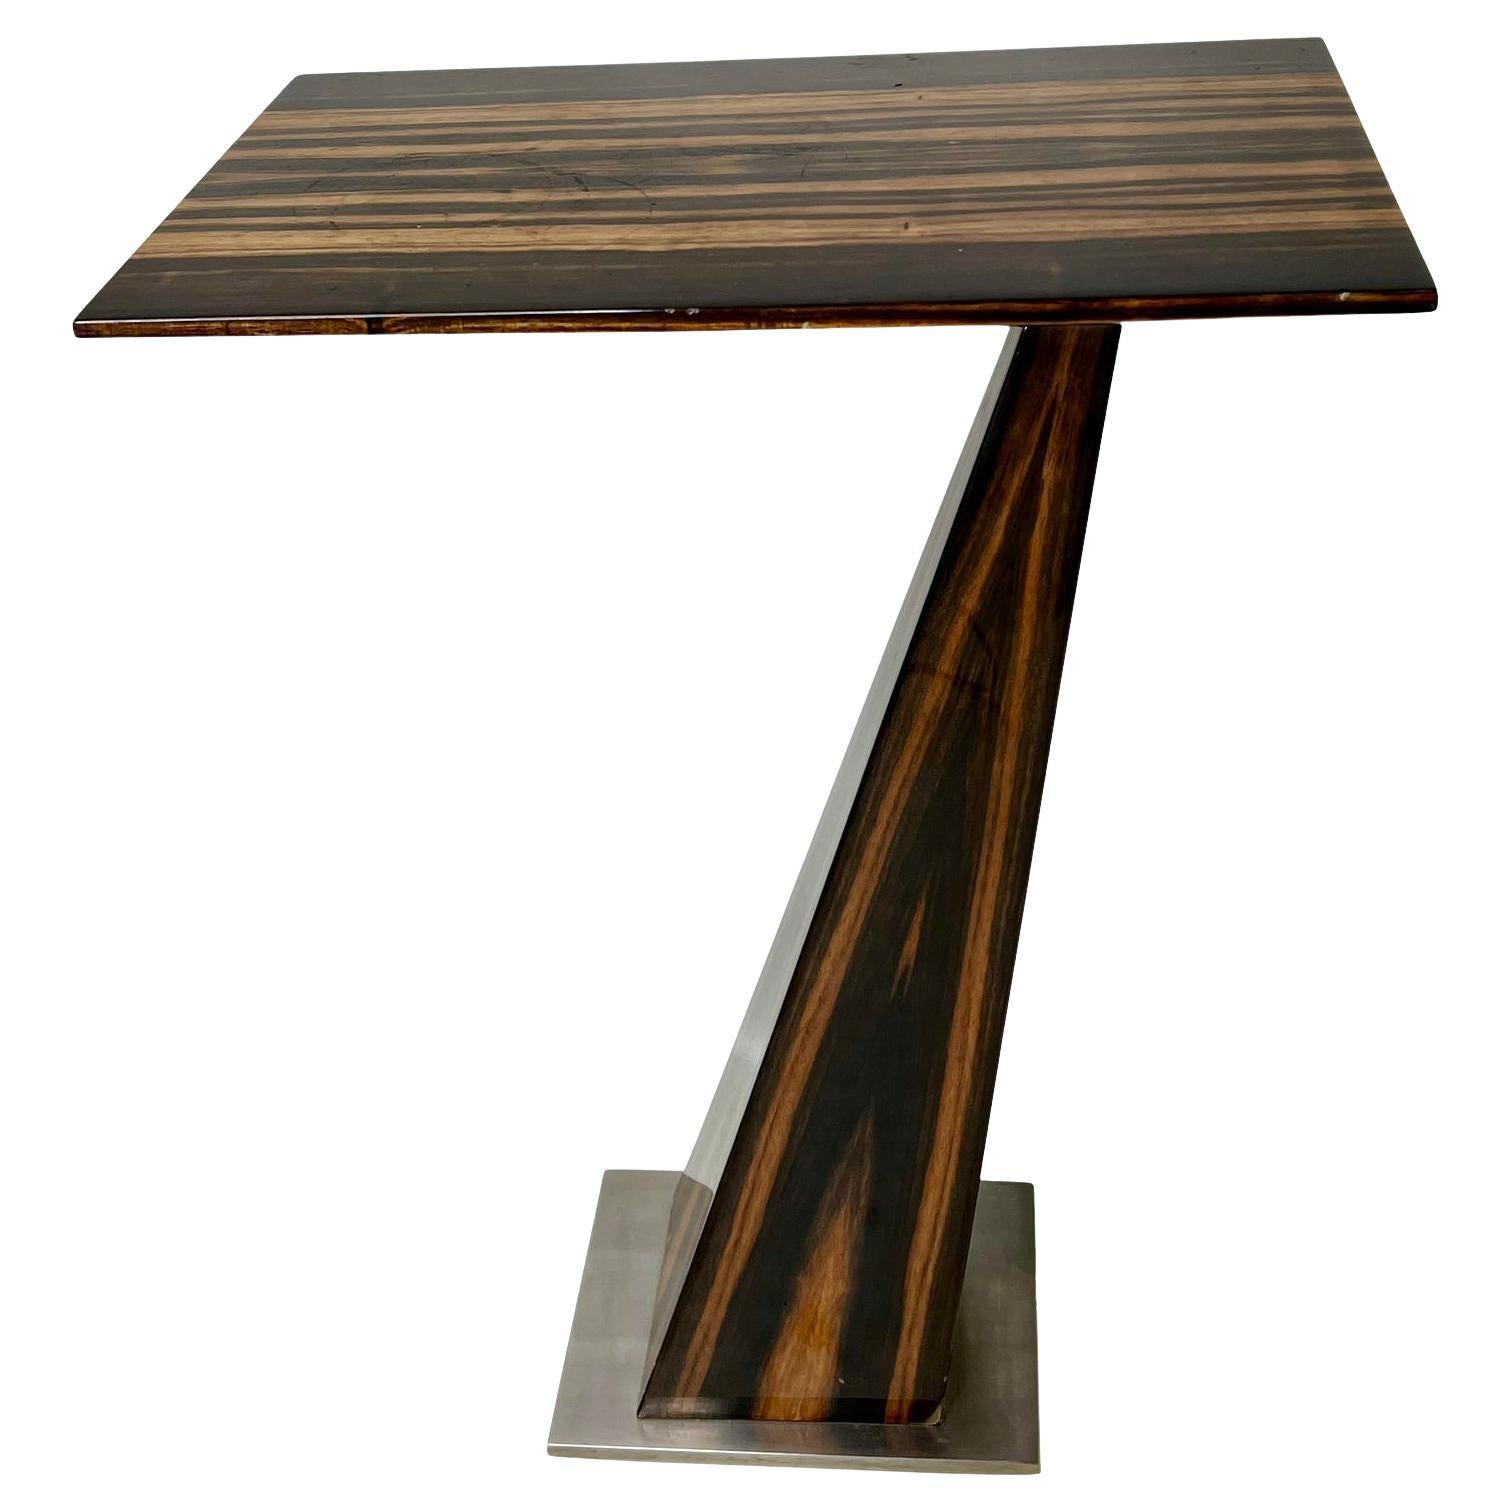 Table d'appoint en bois zébré de style moderne mi-siècle moderne de Marbello Design